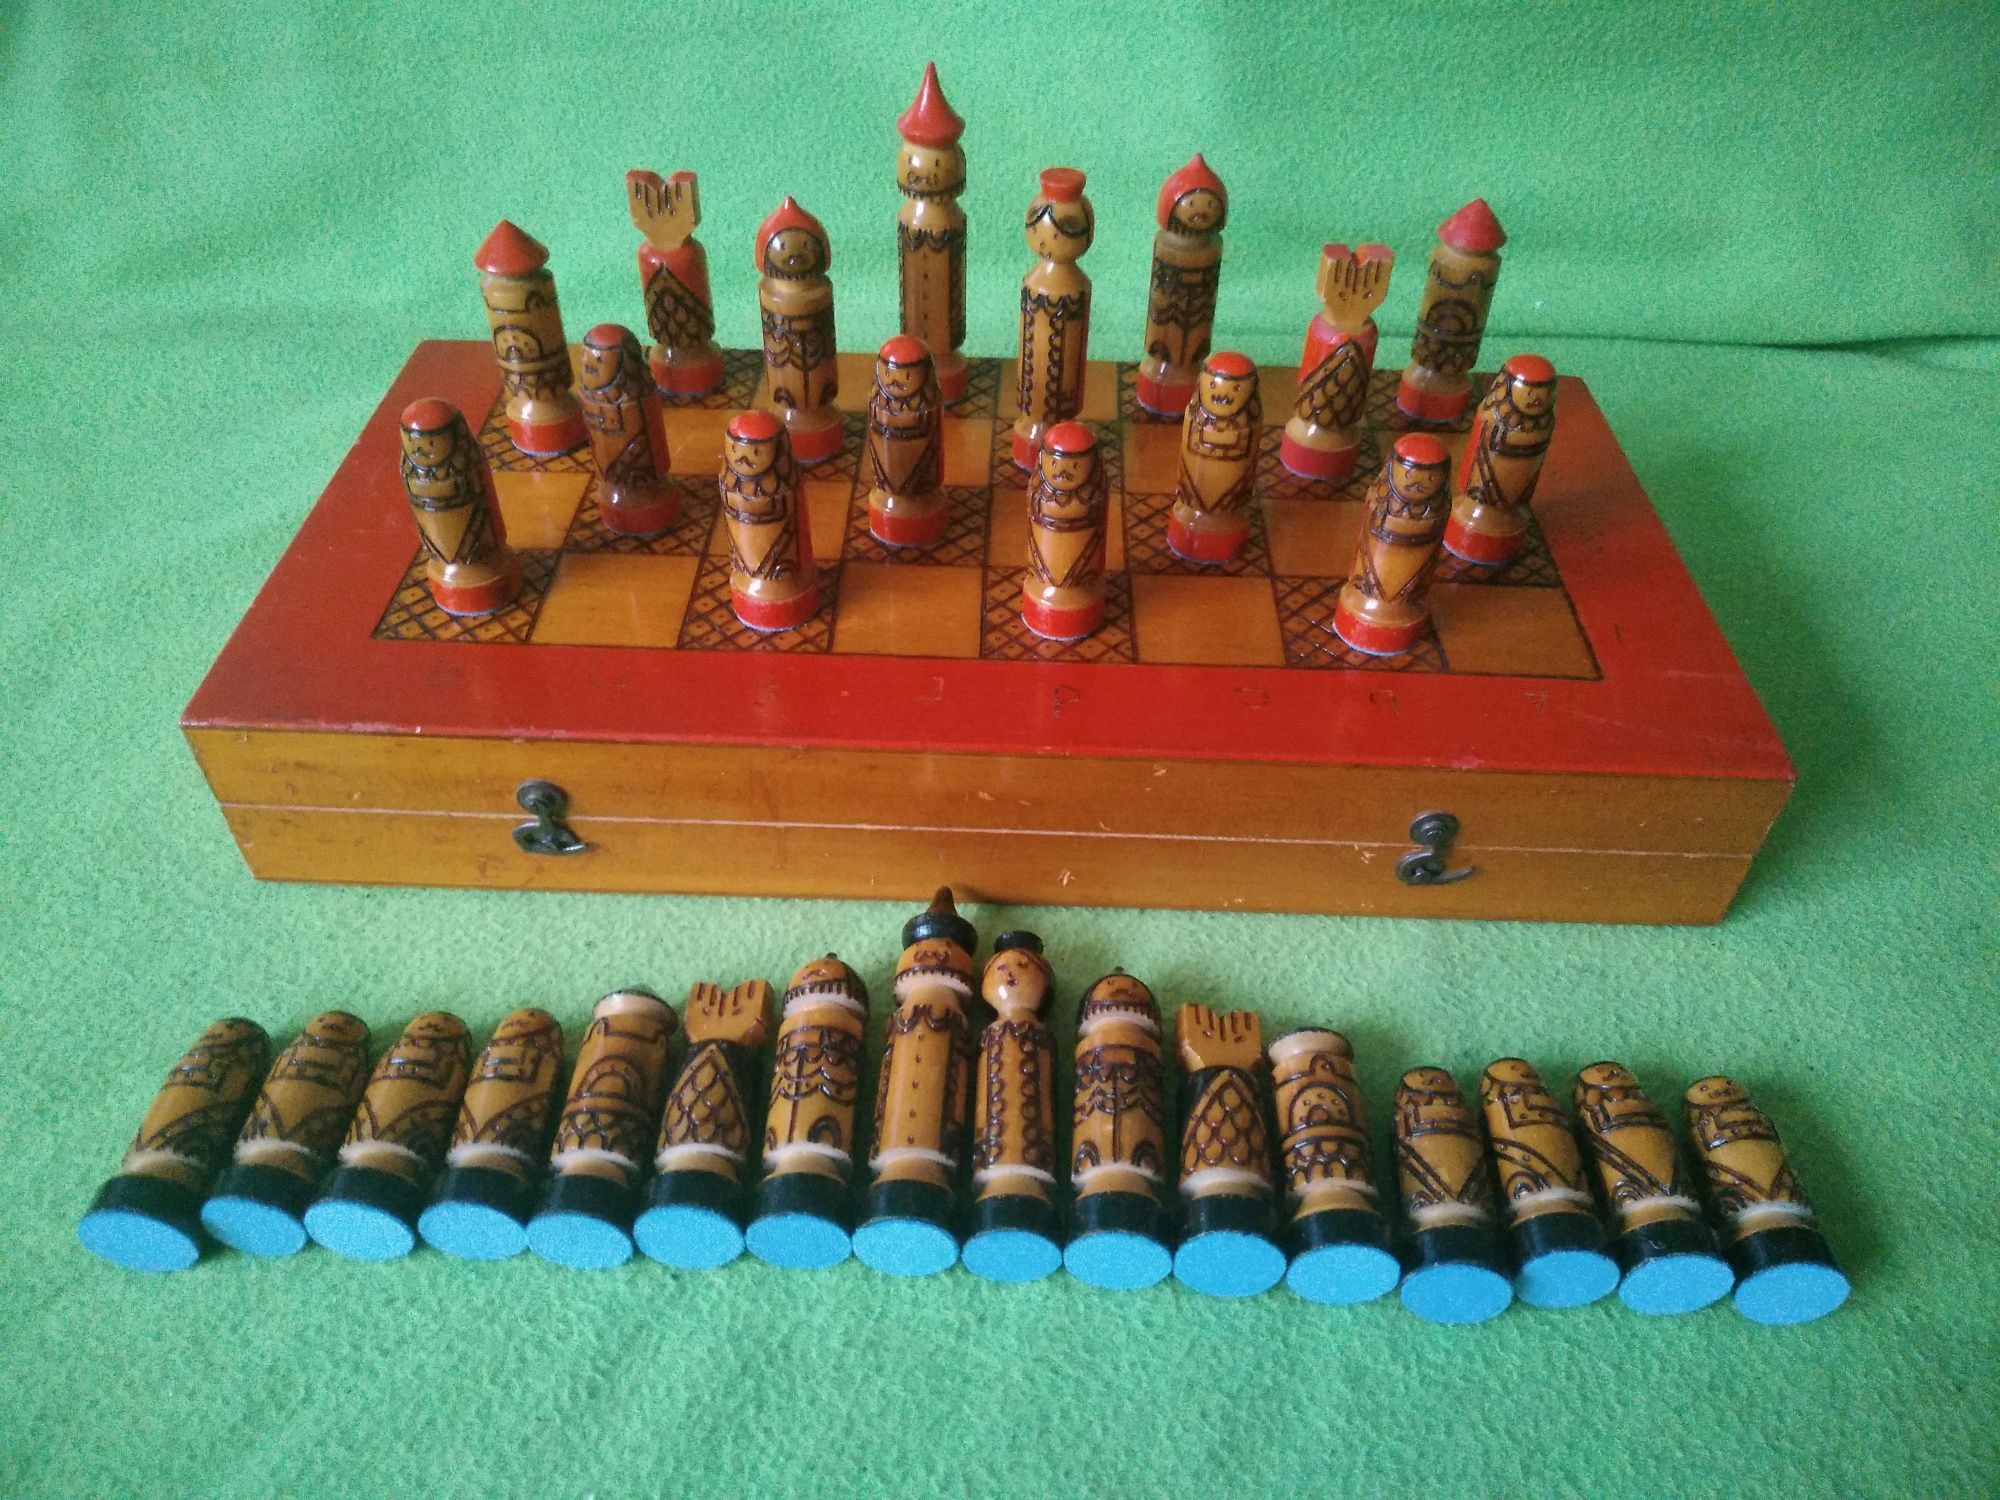 ХУДОЖЕСТВЕННЫЕ шахматы РЕДКИЕ - индивидуальная работа  (70 тые года)